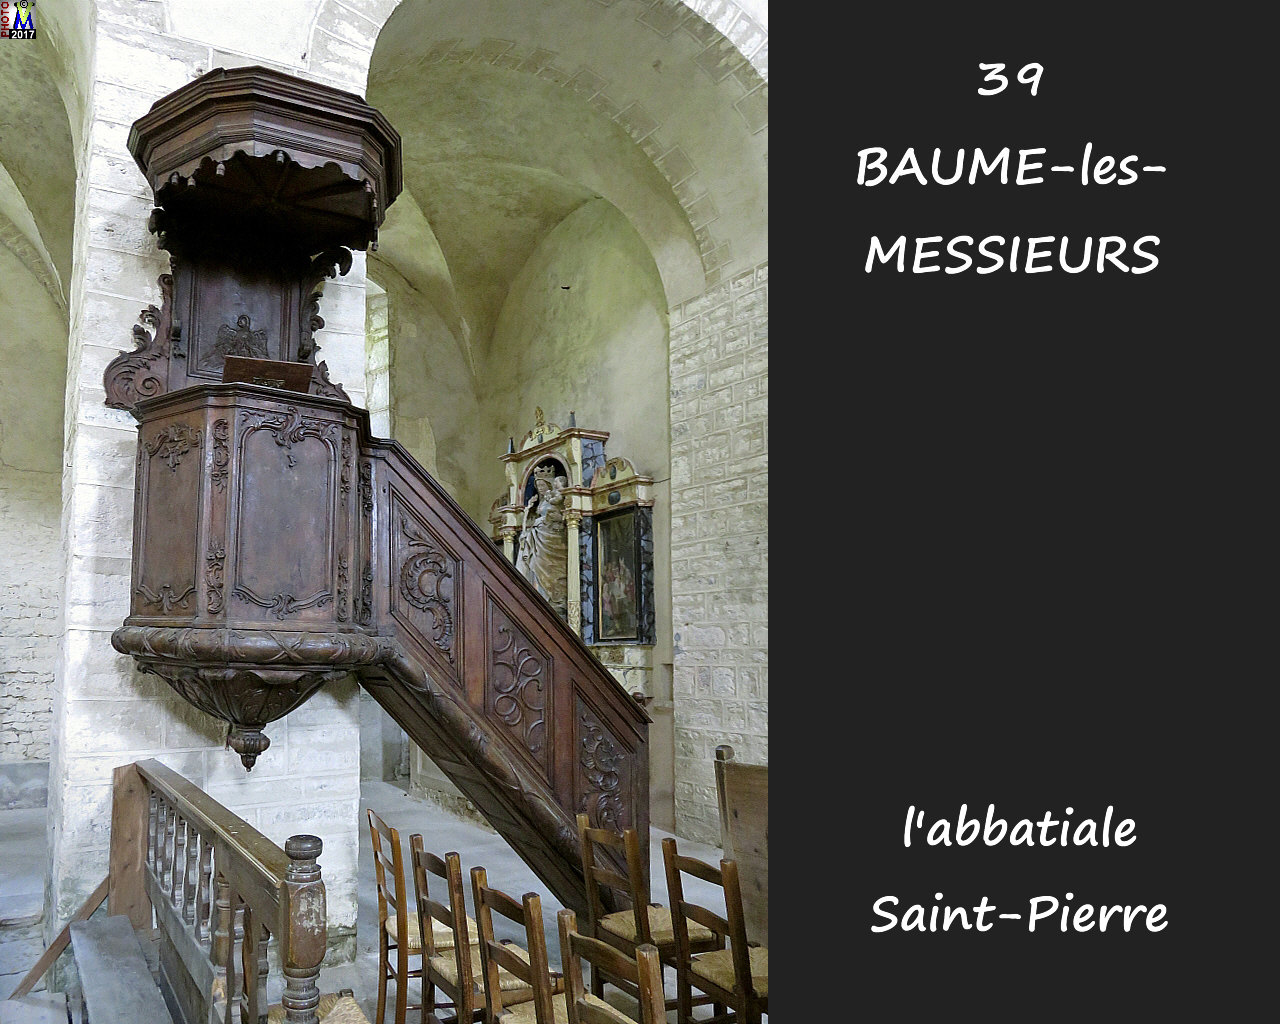 39BAUME-LES-MESSIEURS_abbatiale_274.jpg